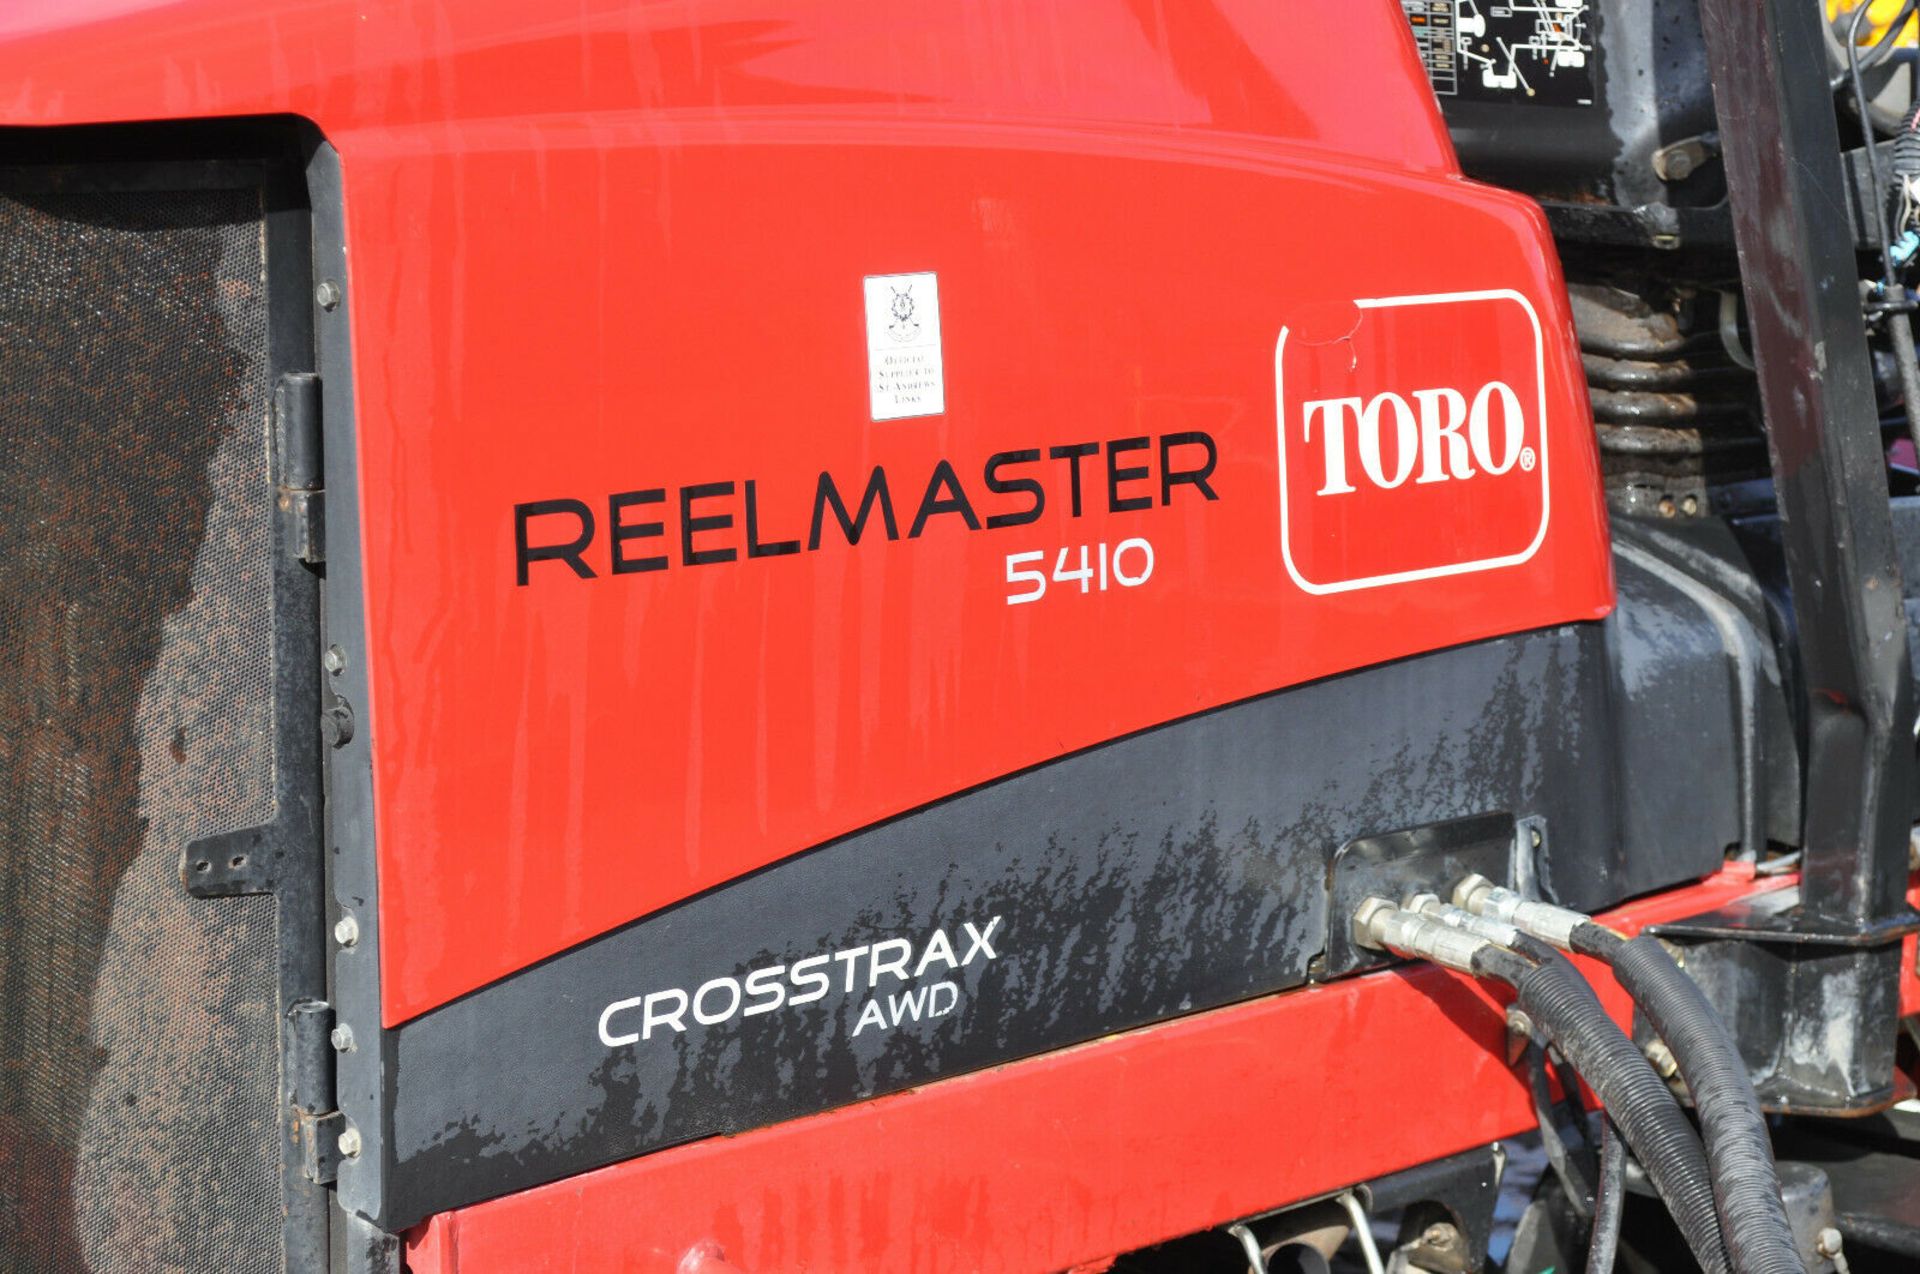 Terex TV1200 Roller Reelmaster 5410 Crosstrax 4WD NO VAT - Image 4 of 11